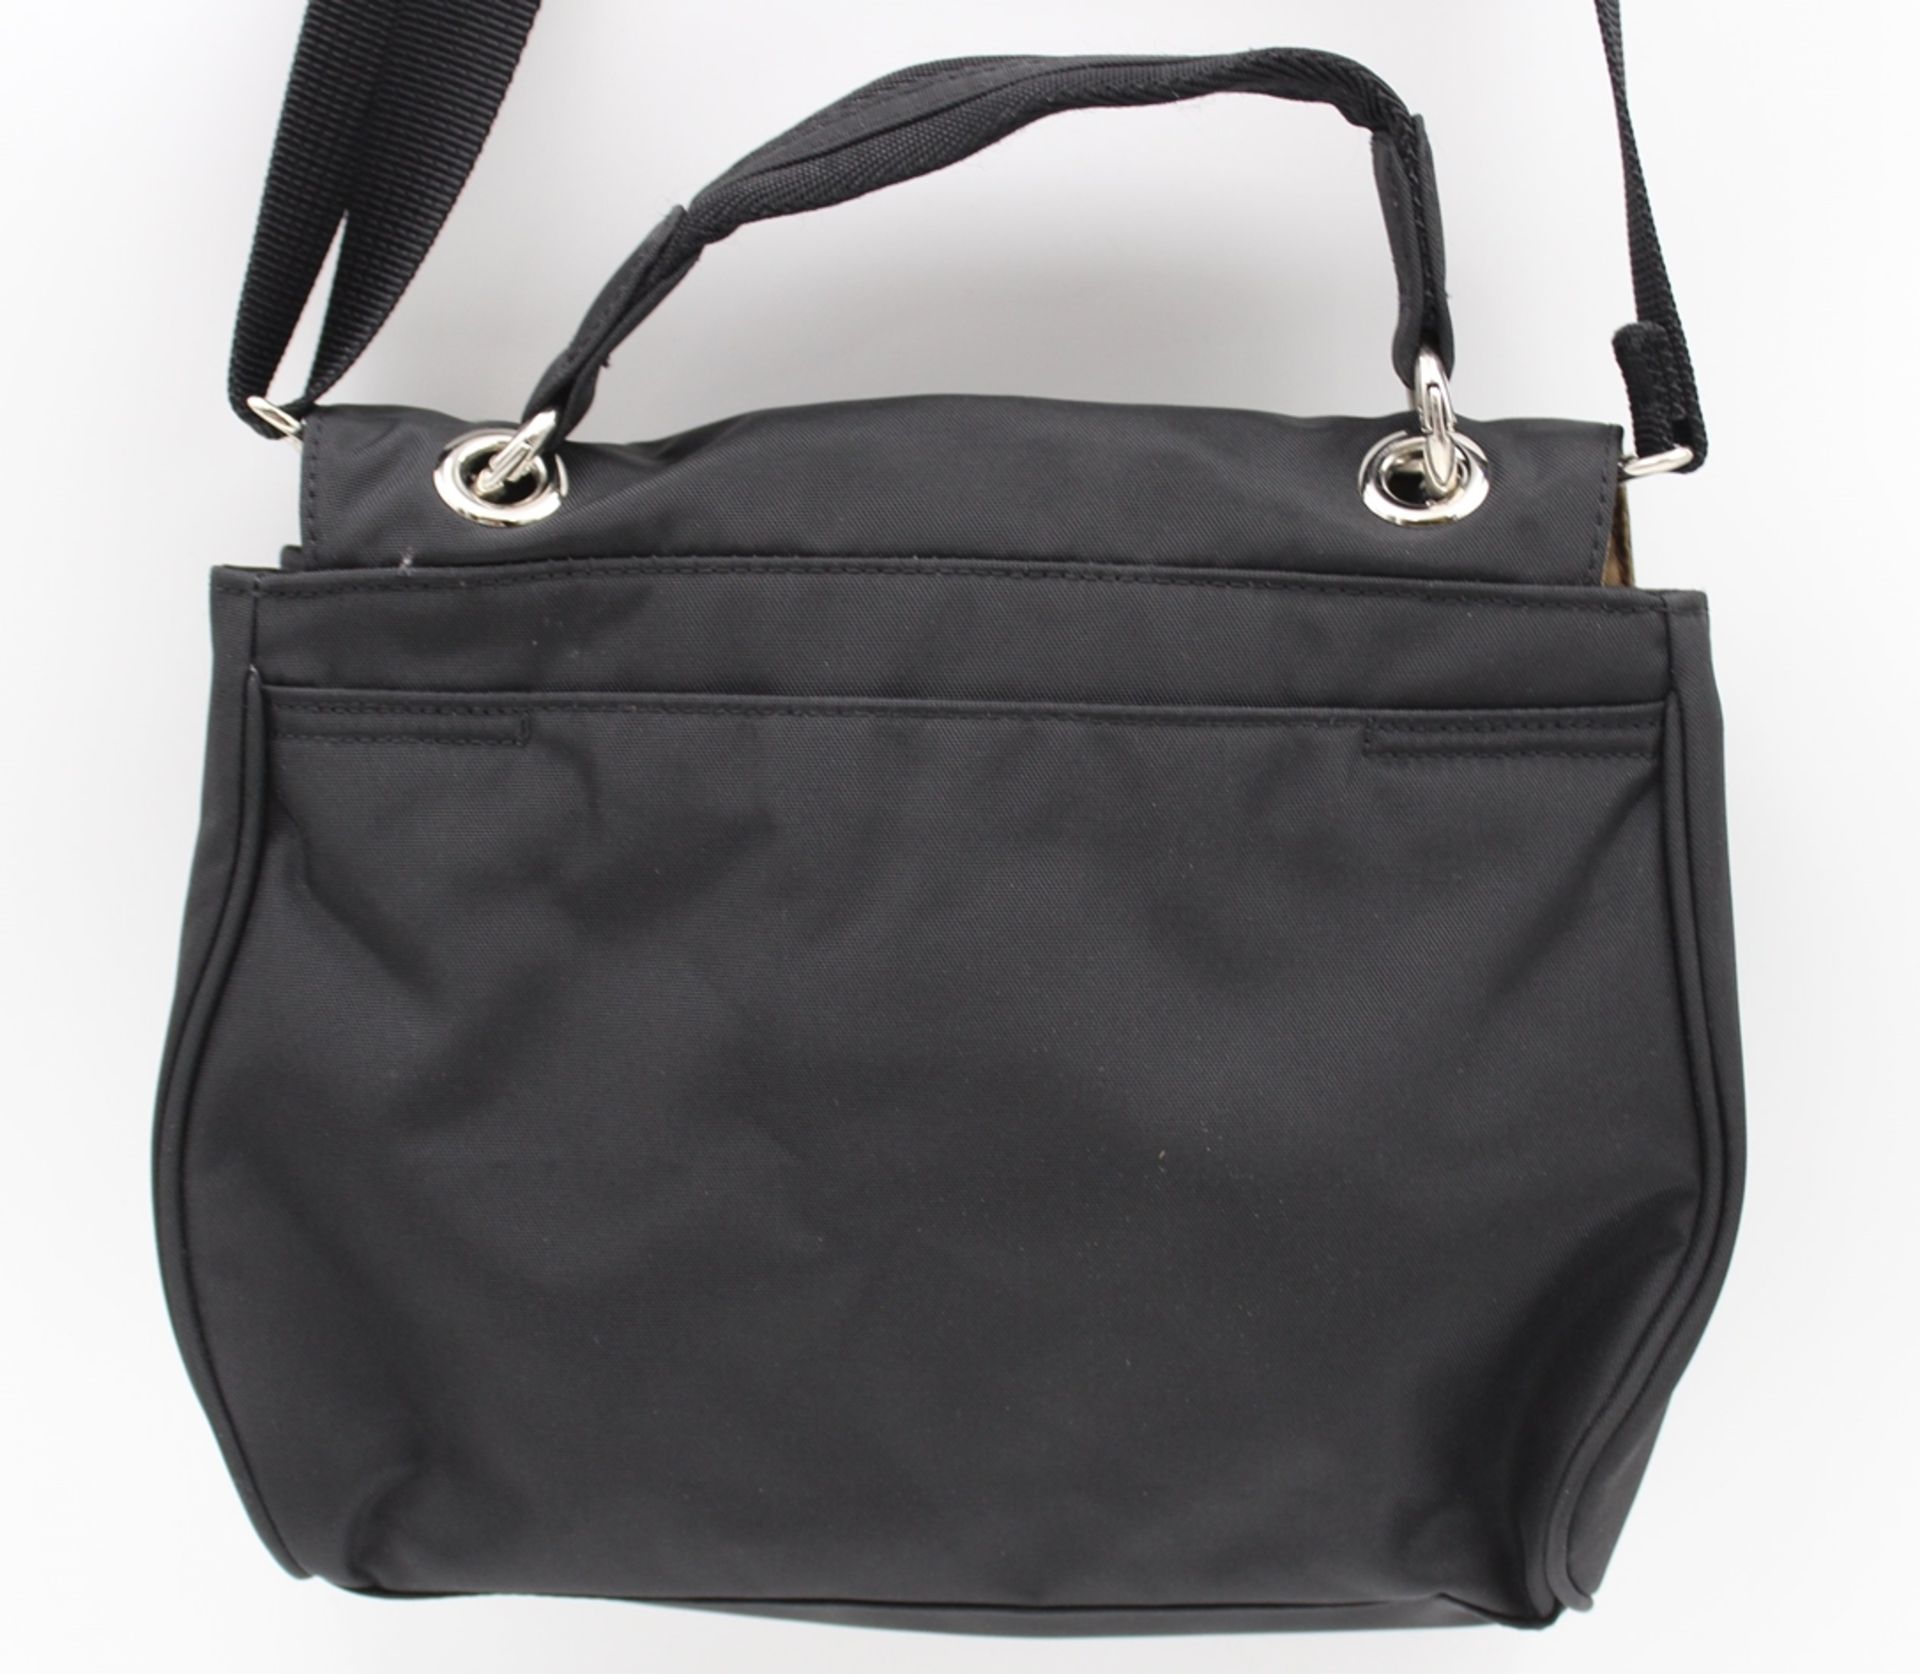 Tasche, Bogner, schwarz, neuwertig, ca. 18 x 25cm. - Bild 4 aus 6